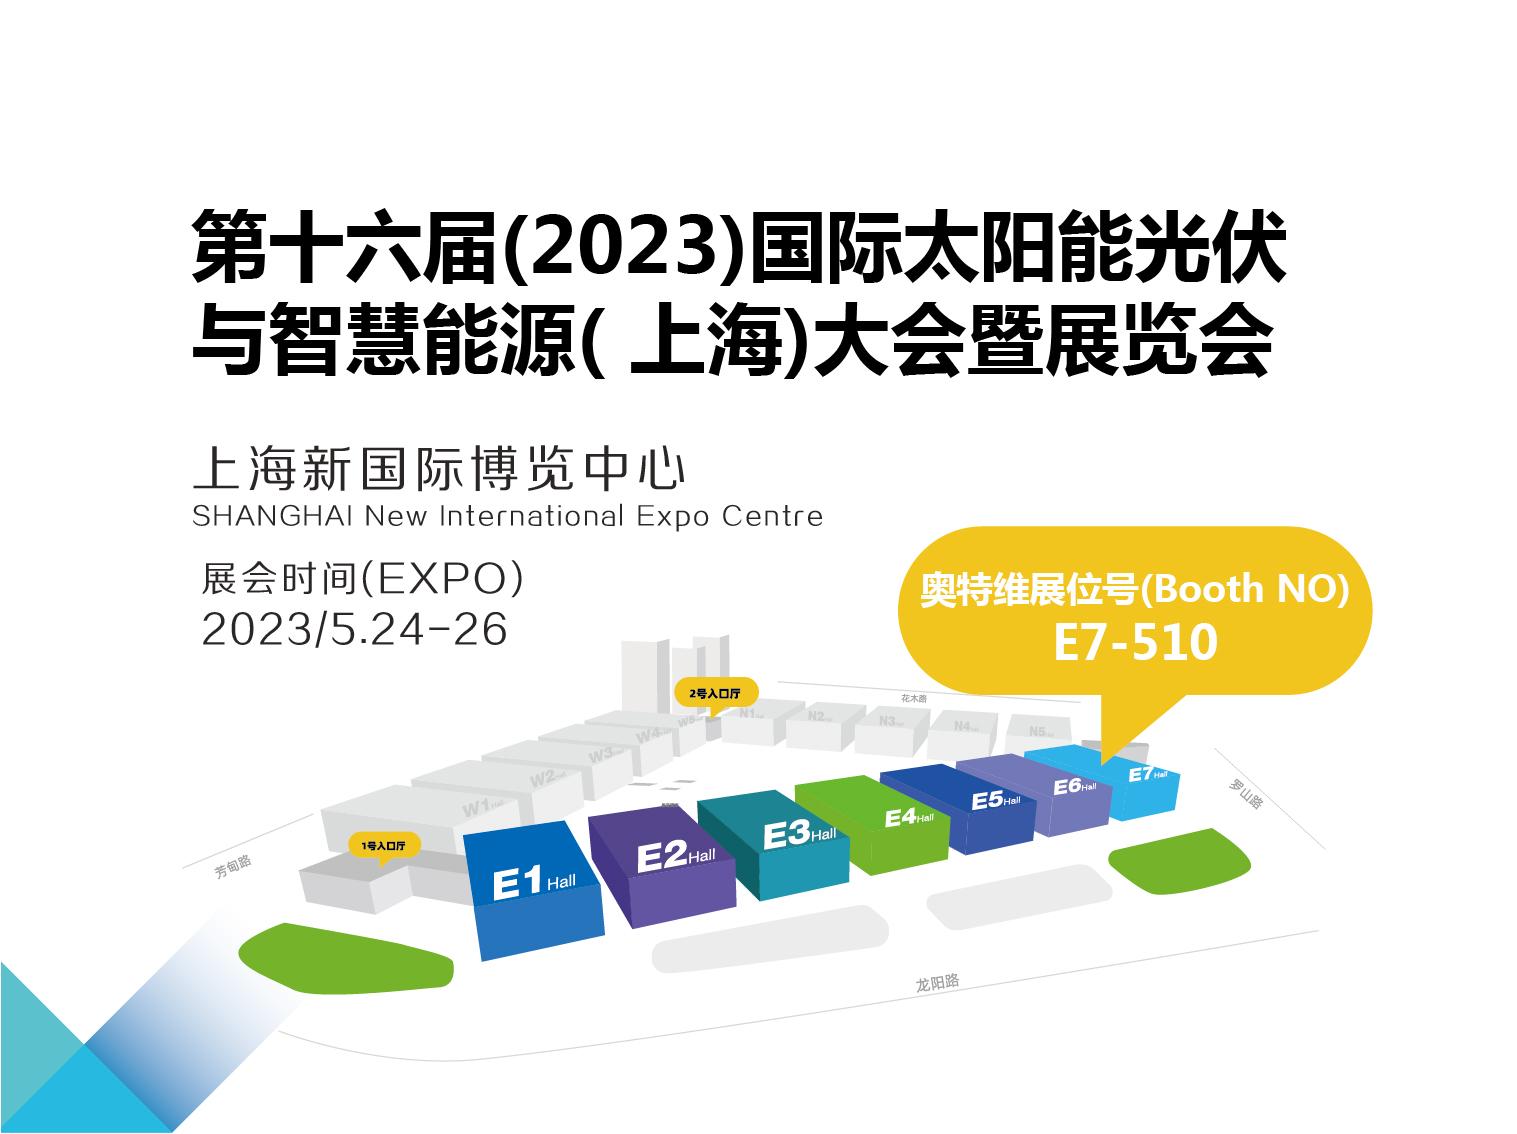 2023年5月24-26日 SNEC第十六届(2023)国际太阳能光伏与智慧能源(上海)大会暨展览会